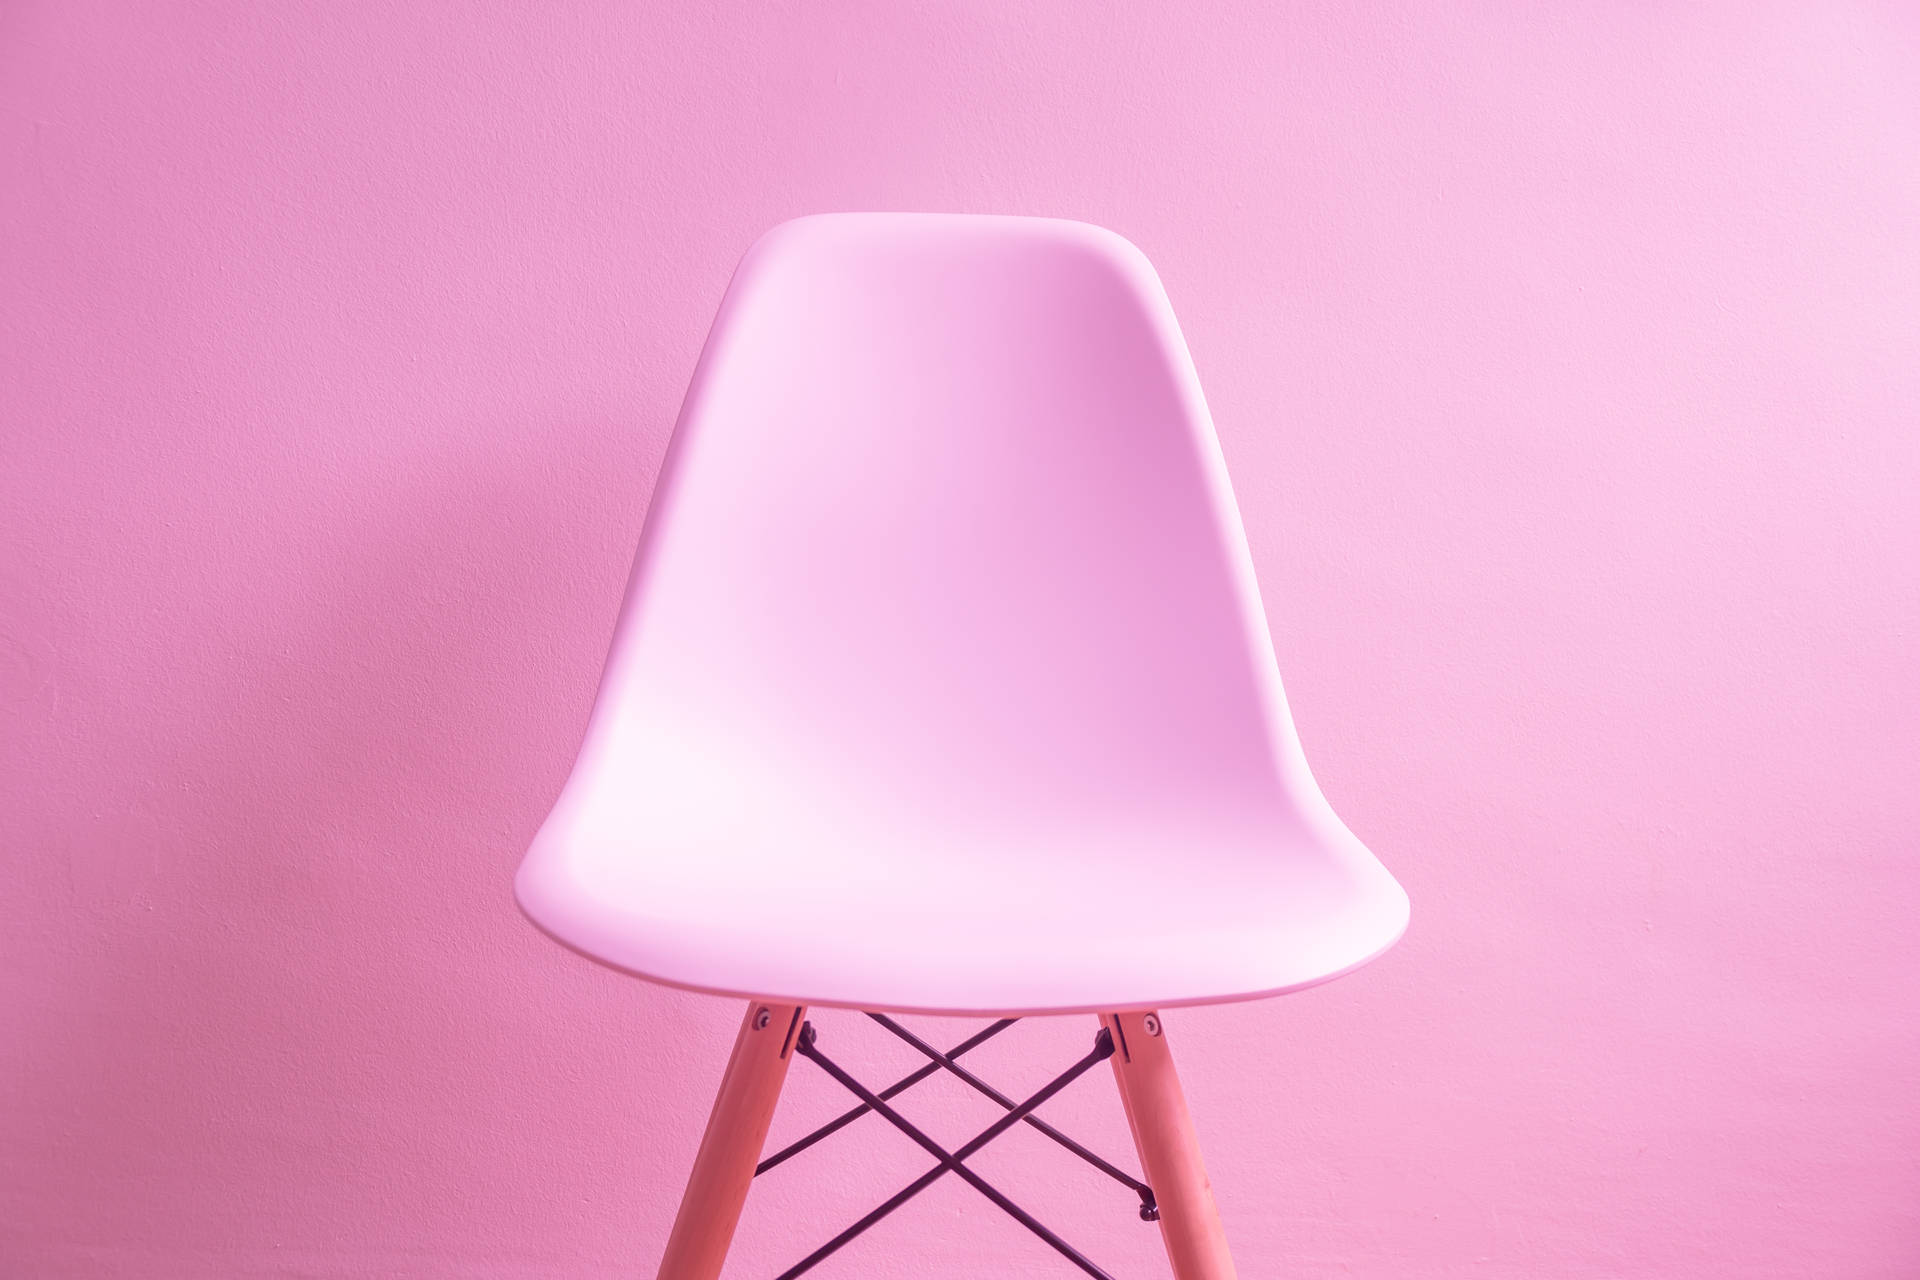 Kawaii Pink Chair On Pink Wall